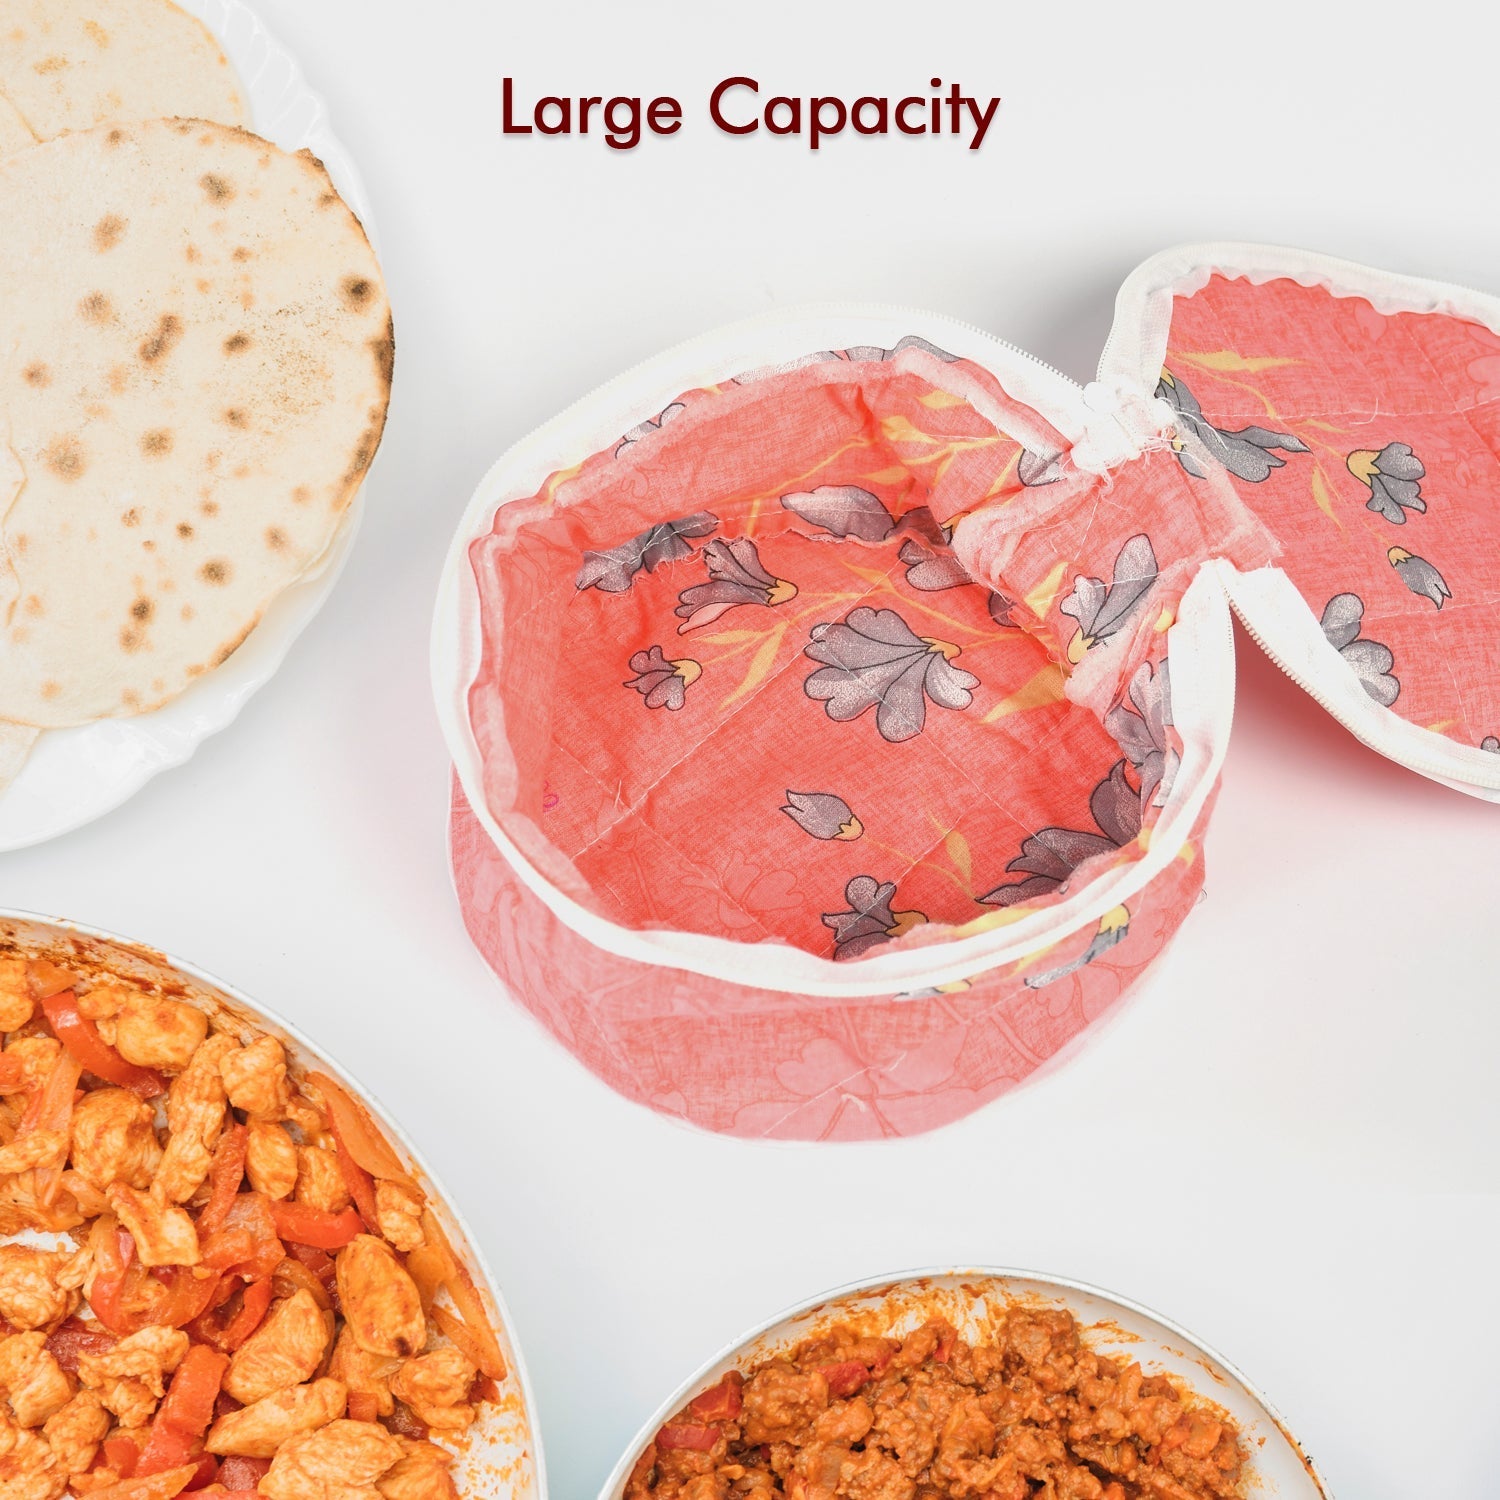 5315 Hot Chapatti Box | Roti Cotton Cloth Casserole | Basket | Washable | Roti Rumals with Multi Color DeoDap